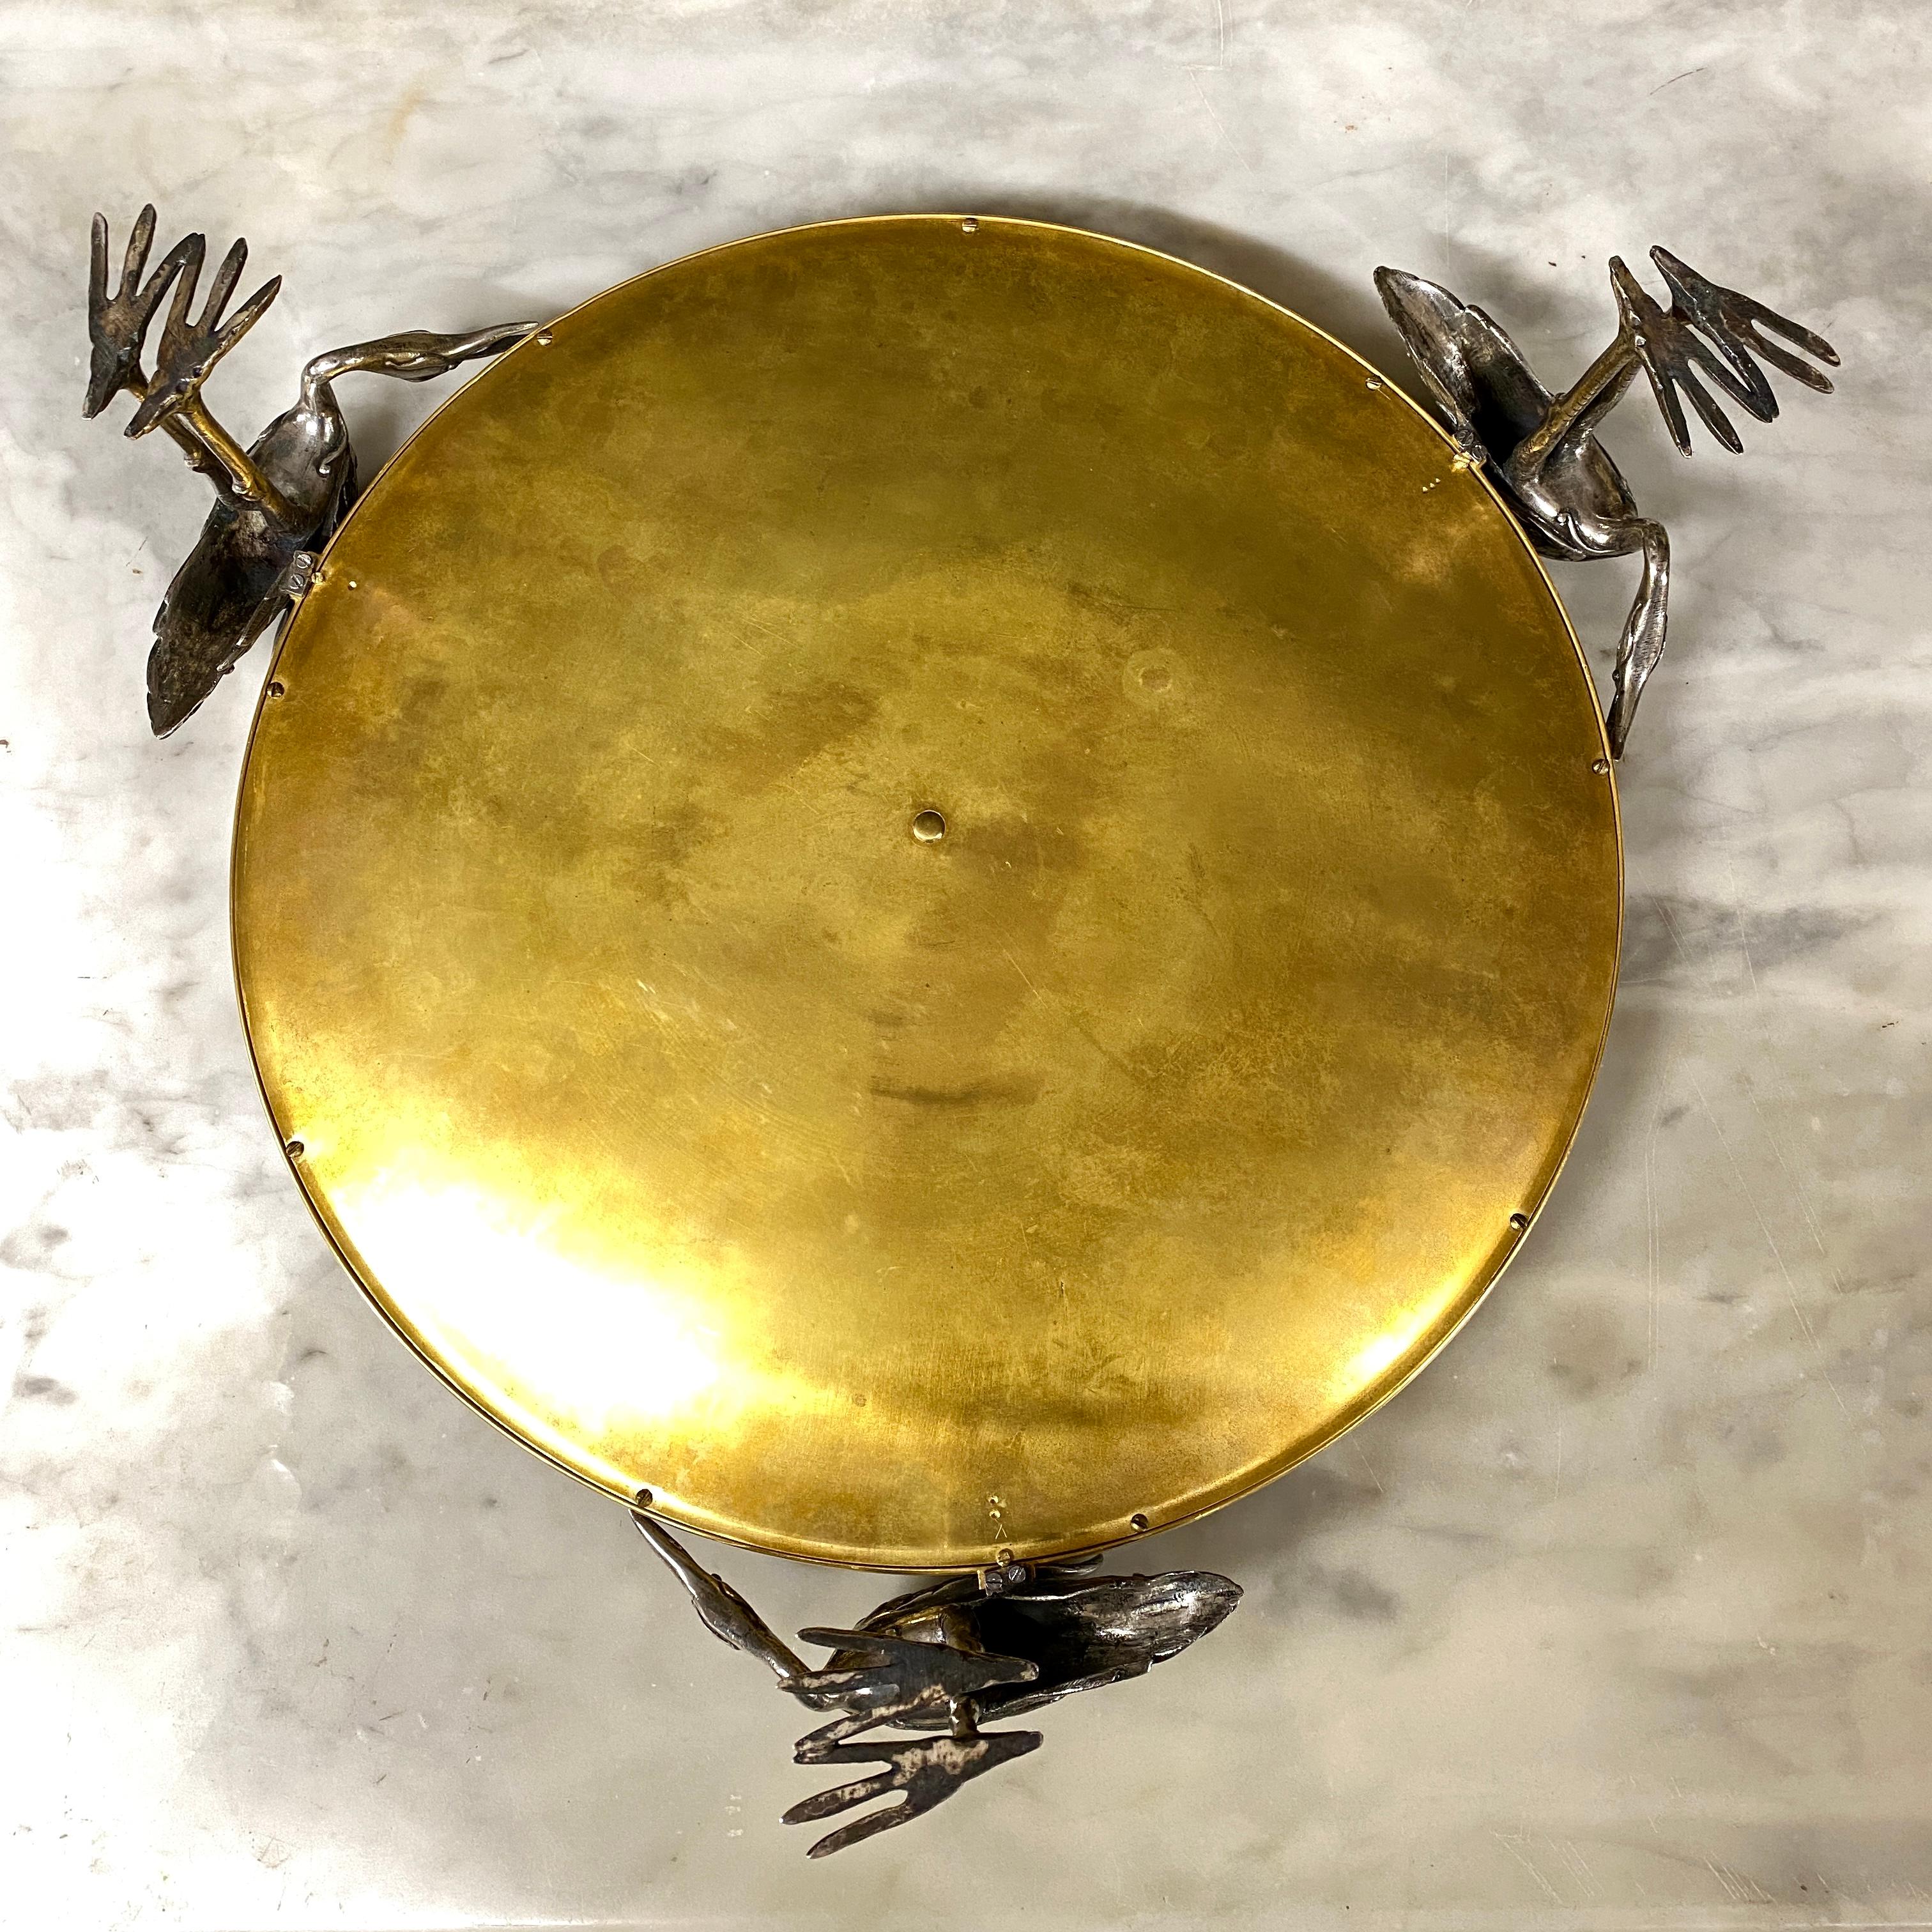 Grande coupe en bronze doré et bronze argenté tenue par trois cigognes formant la base. Il est décoré d'une marqueterie centrale en ivoire et en bois précieux (palissandre, bois de rose) cloisonnée en laiton ciselé. Cette décoration représente un